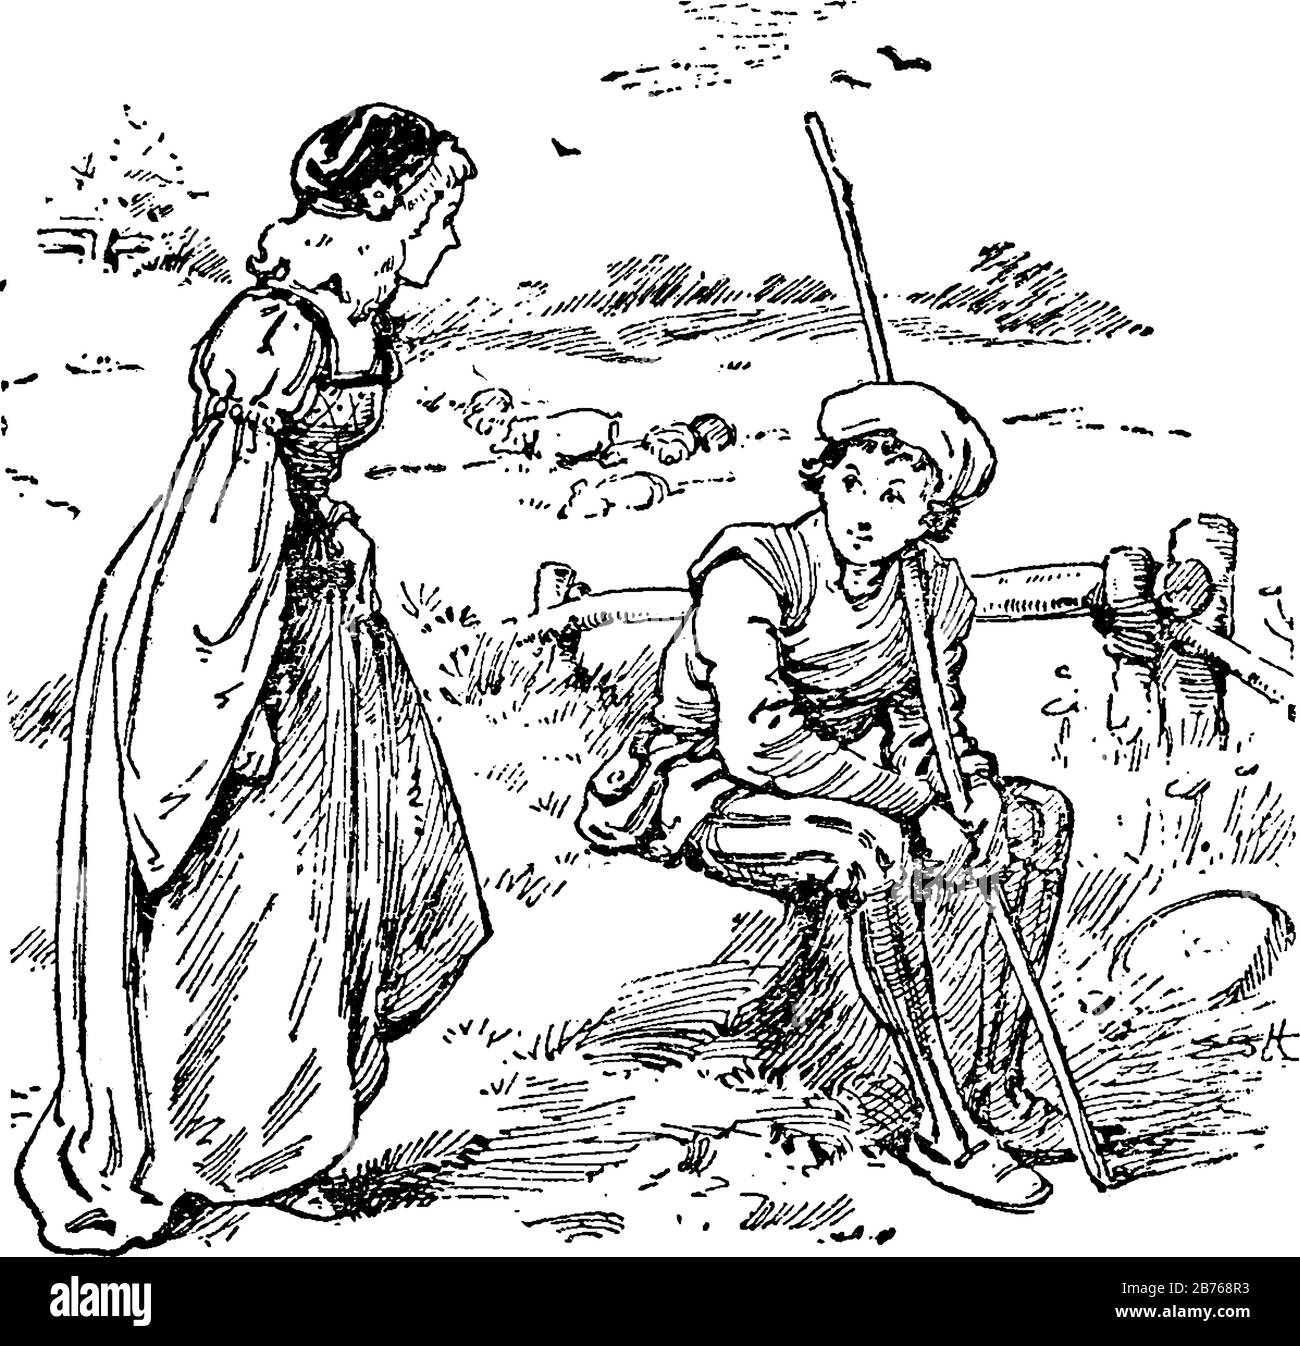 Prinz und Prinzessin, diese Szene zeigt einen jungen Jungen mit Stock, der auf Rock sitzt und ein junges Mädchen in seiner Nähe steht und mit ihm spricht, klassische Strichzeichnung Stock Vektor